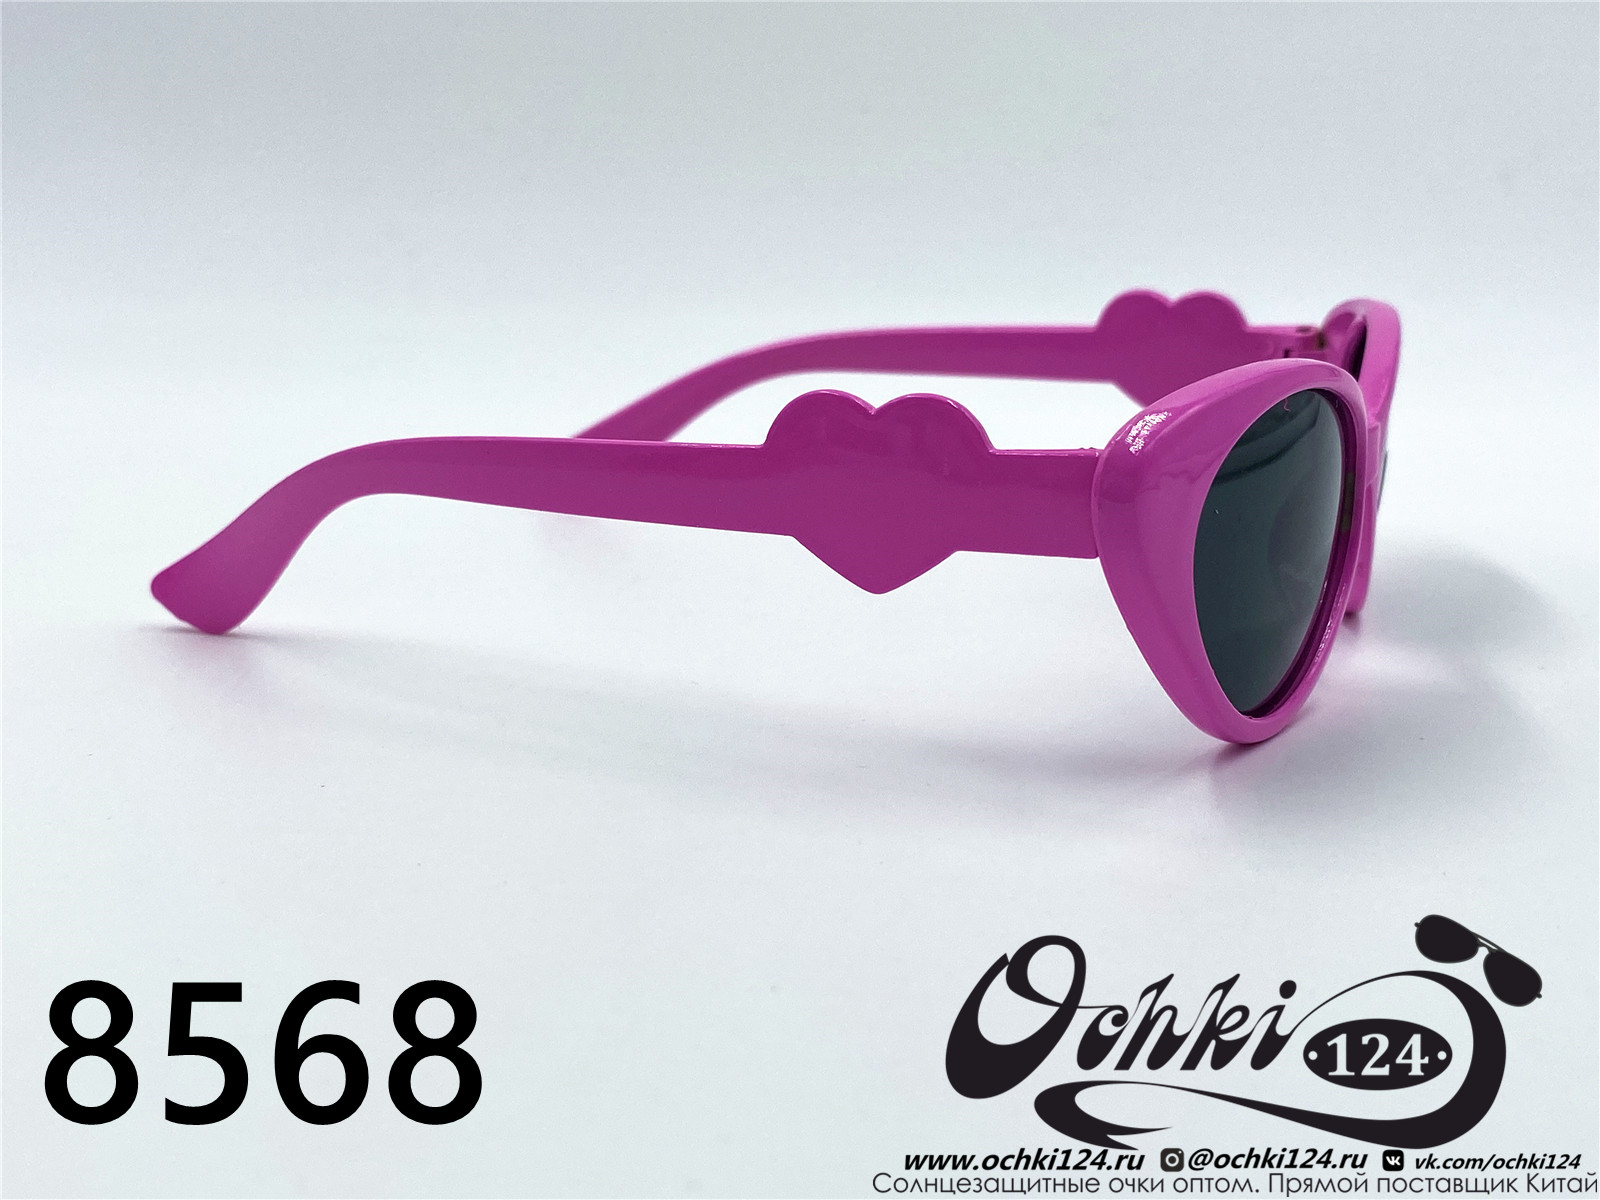  Солнцезащитные очки картинка 2022 Детские Геометрические формы  8568-7 